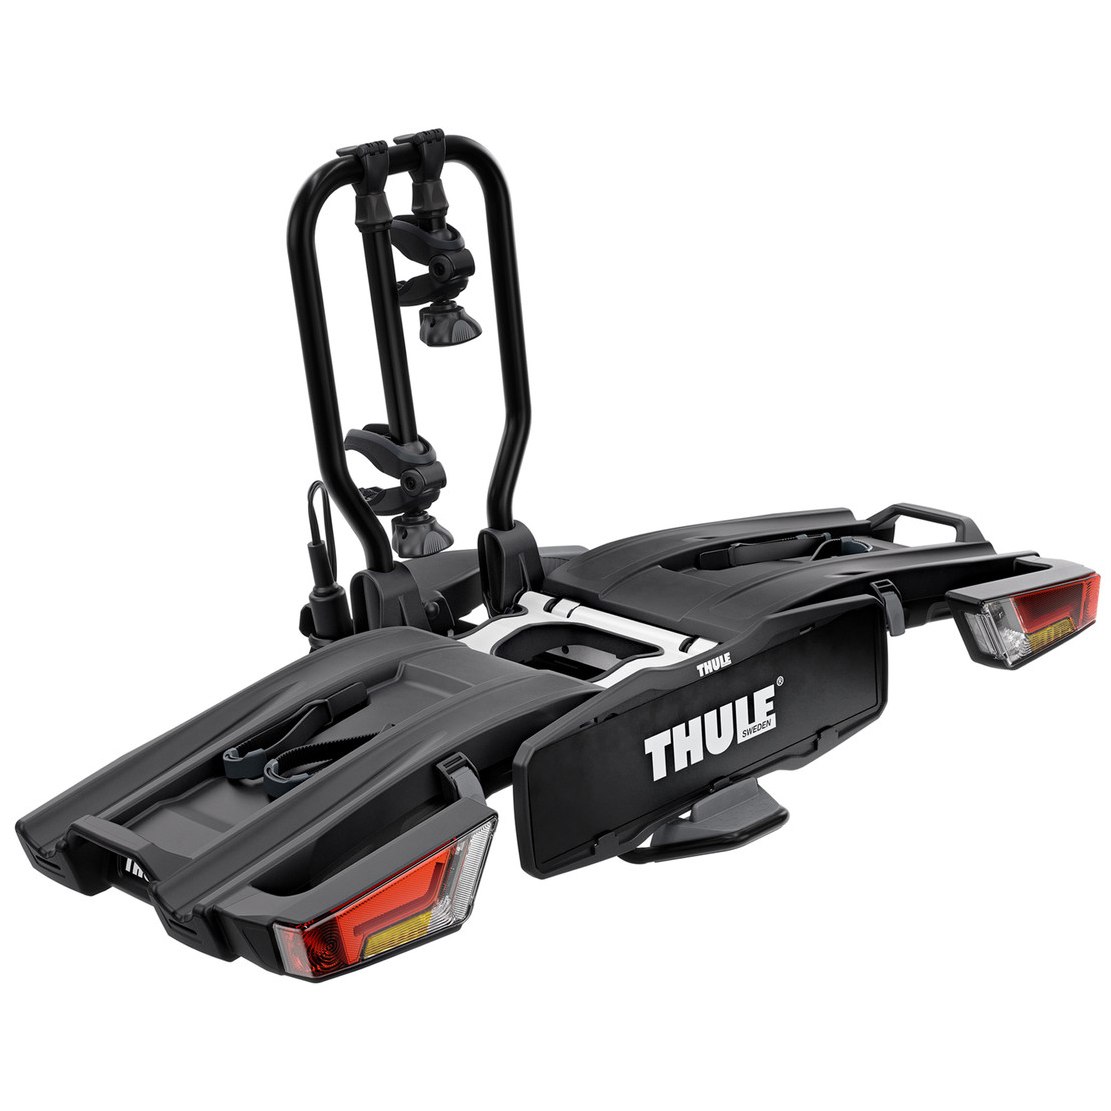 Produktbild von Thule EasyFold XT 2 Fahrradträger für zwei Fahrräder ohne Tasche und Felgenschutz - schwarz